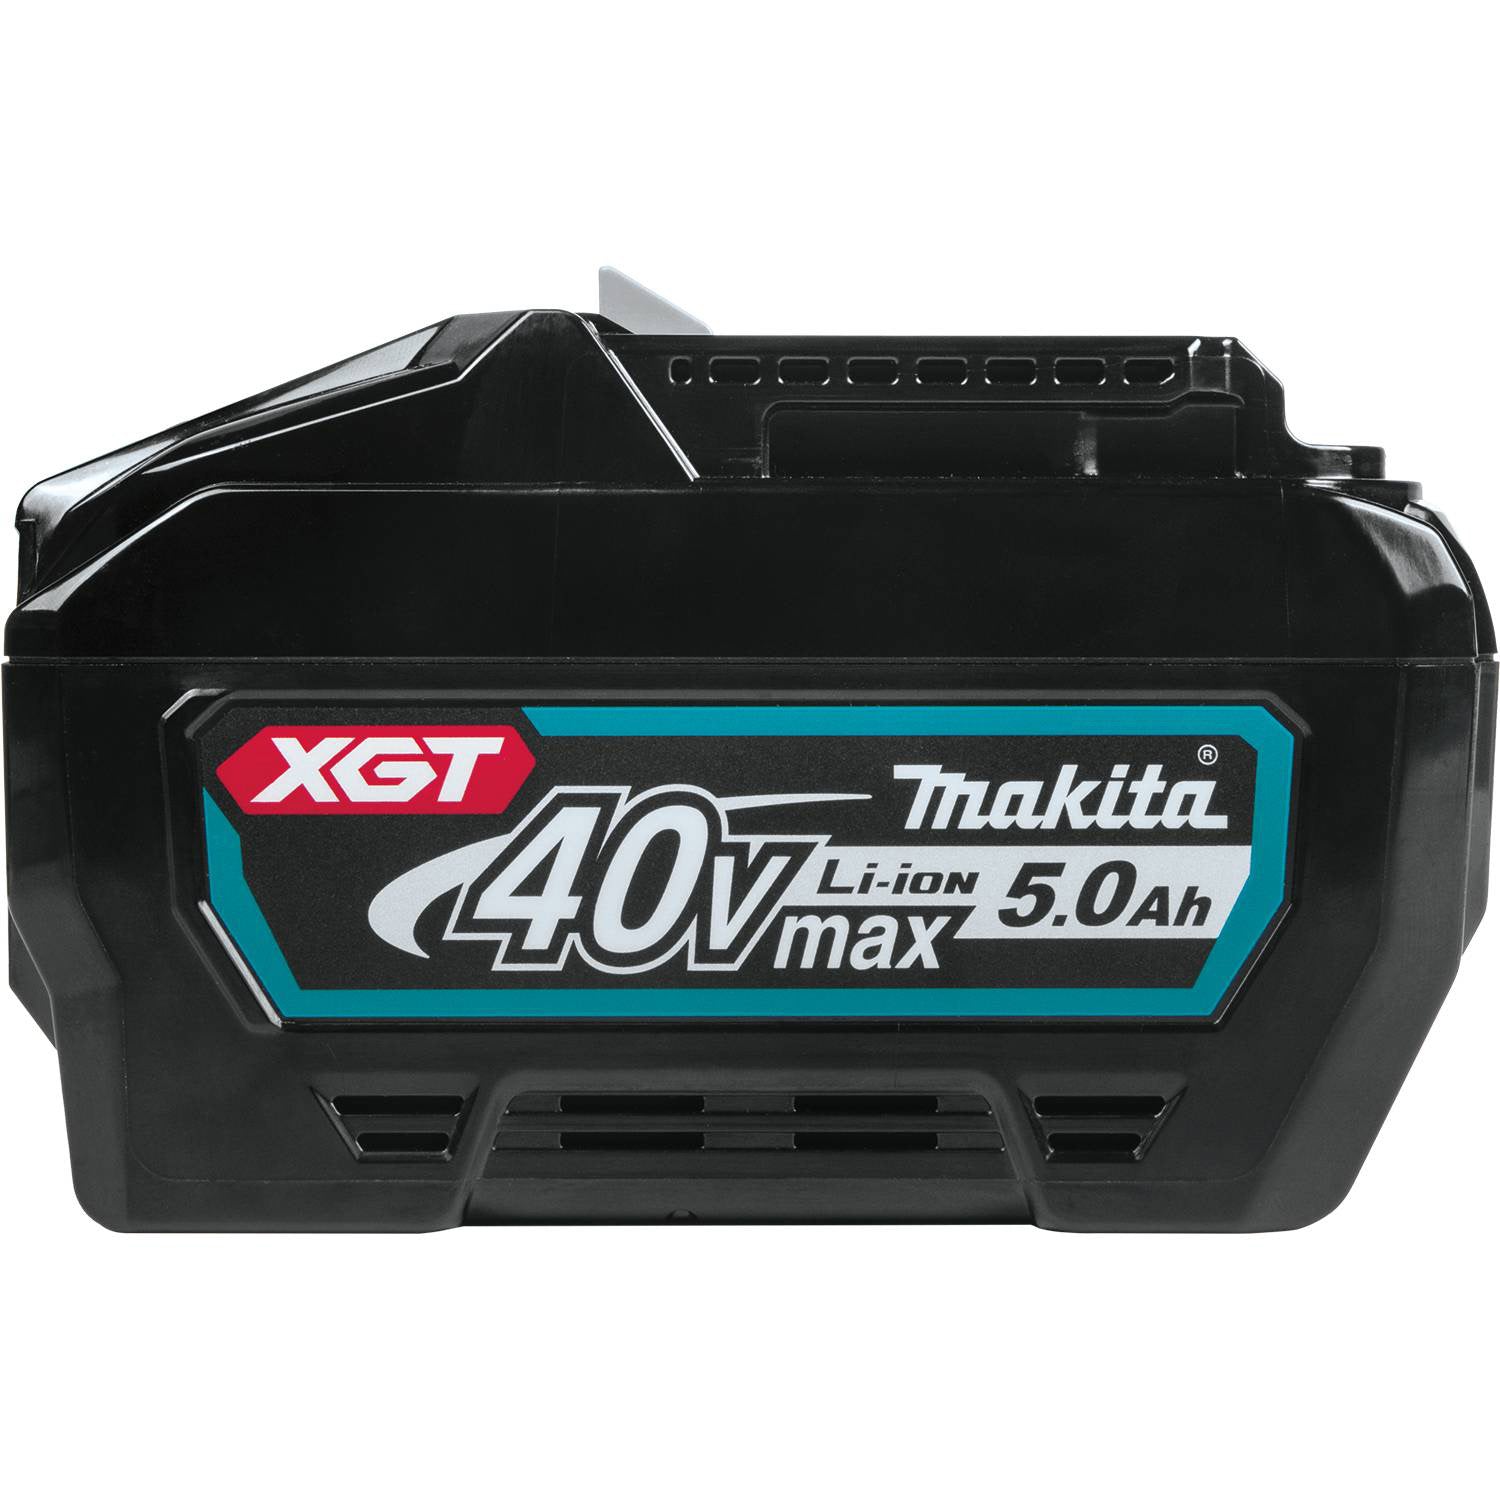 BL4050F 40V Max 5.0Ah Battery Toolbarn.com